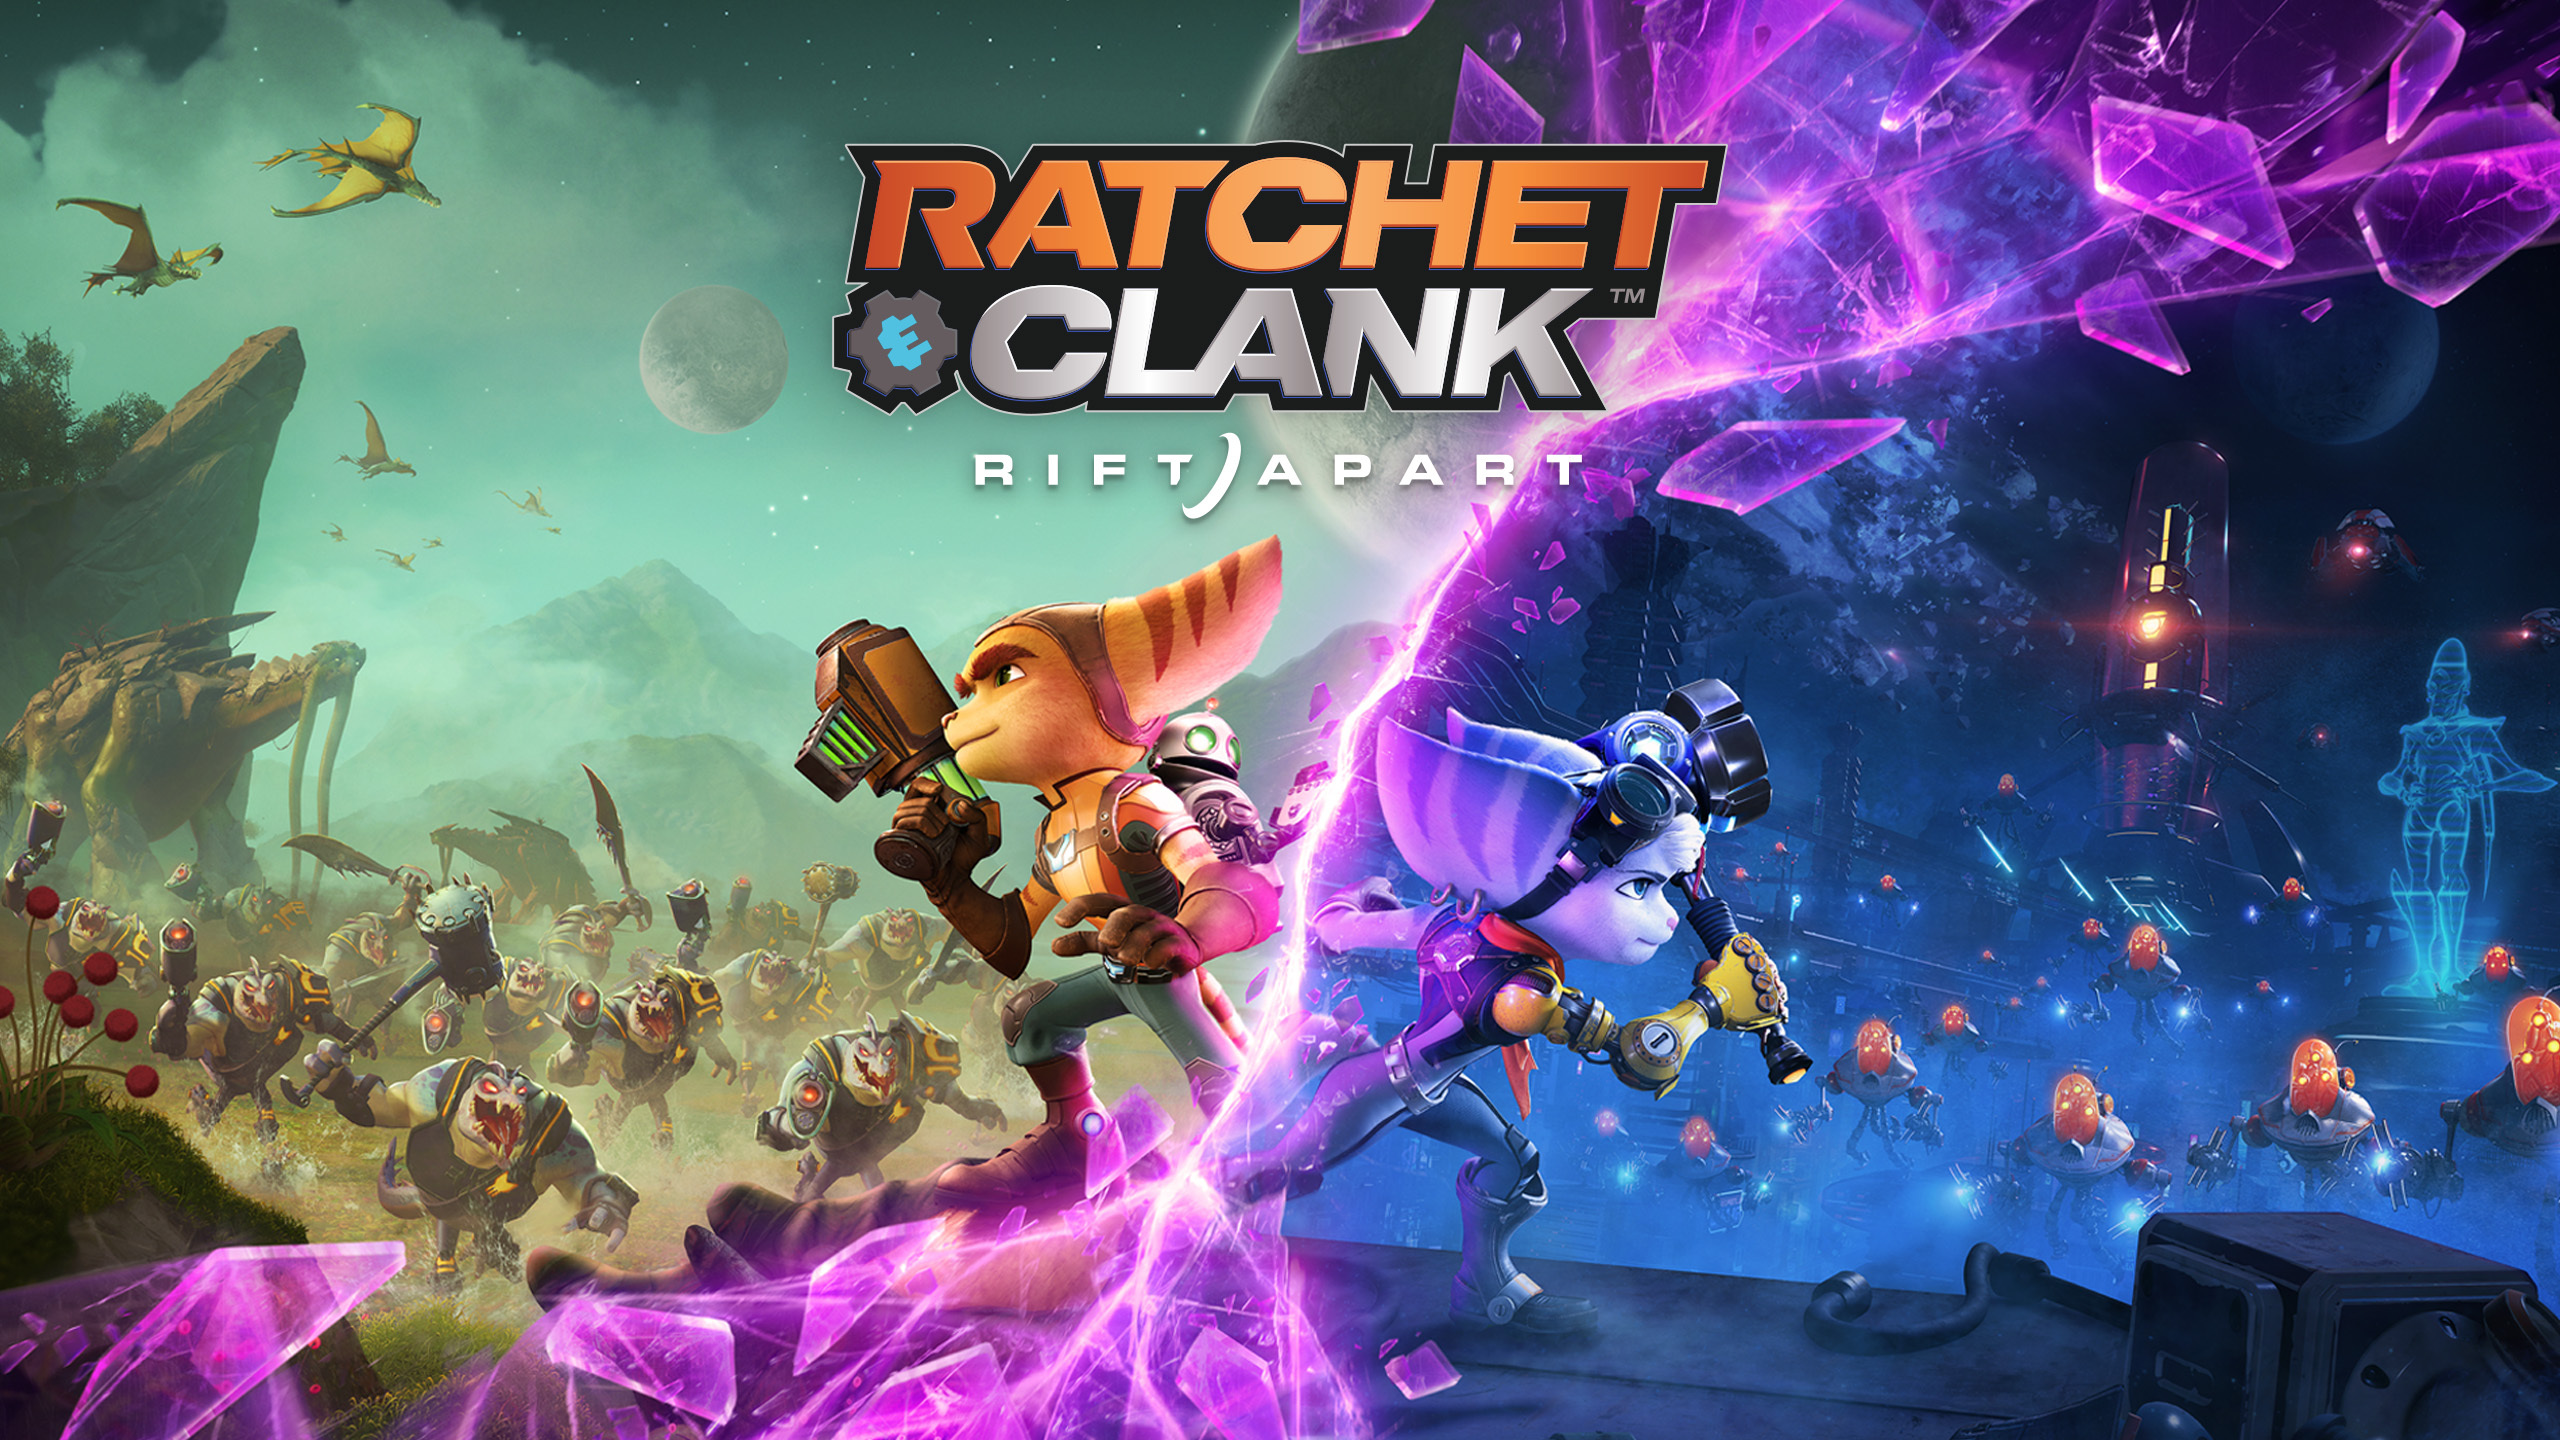 Ratchet & Clank: Rift Apart ИГРОМУЛЬФИЛЬМ ►#7 Прохождение без комментариев (Русская озвучка)